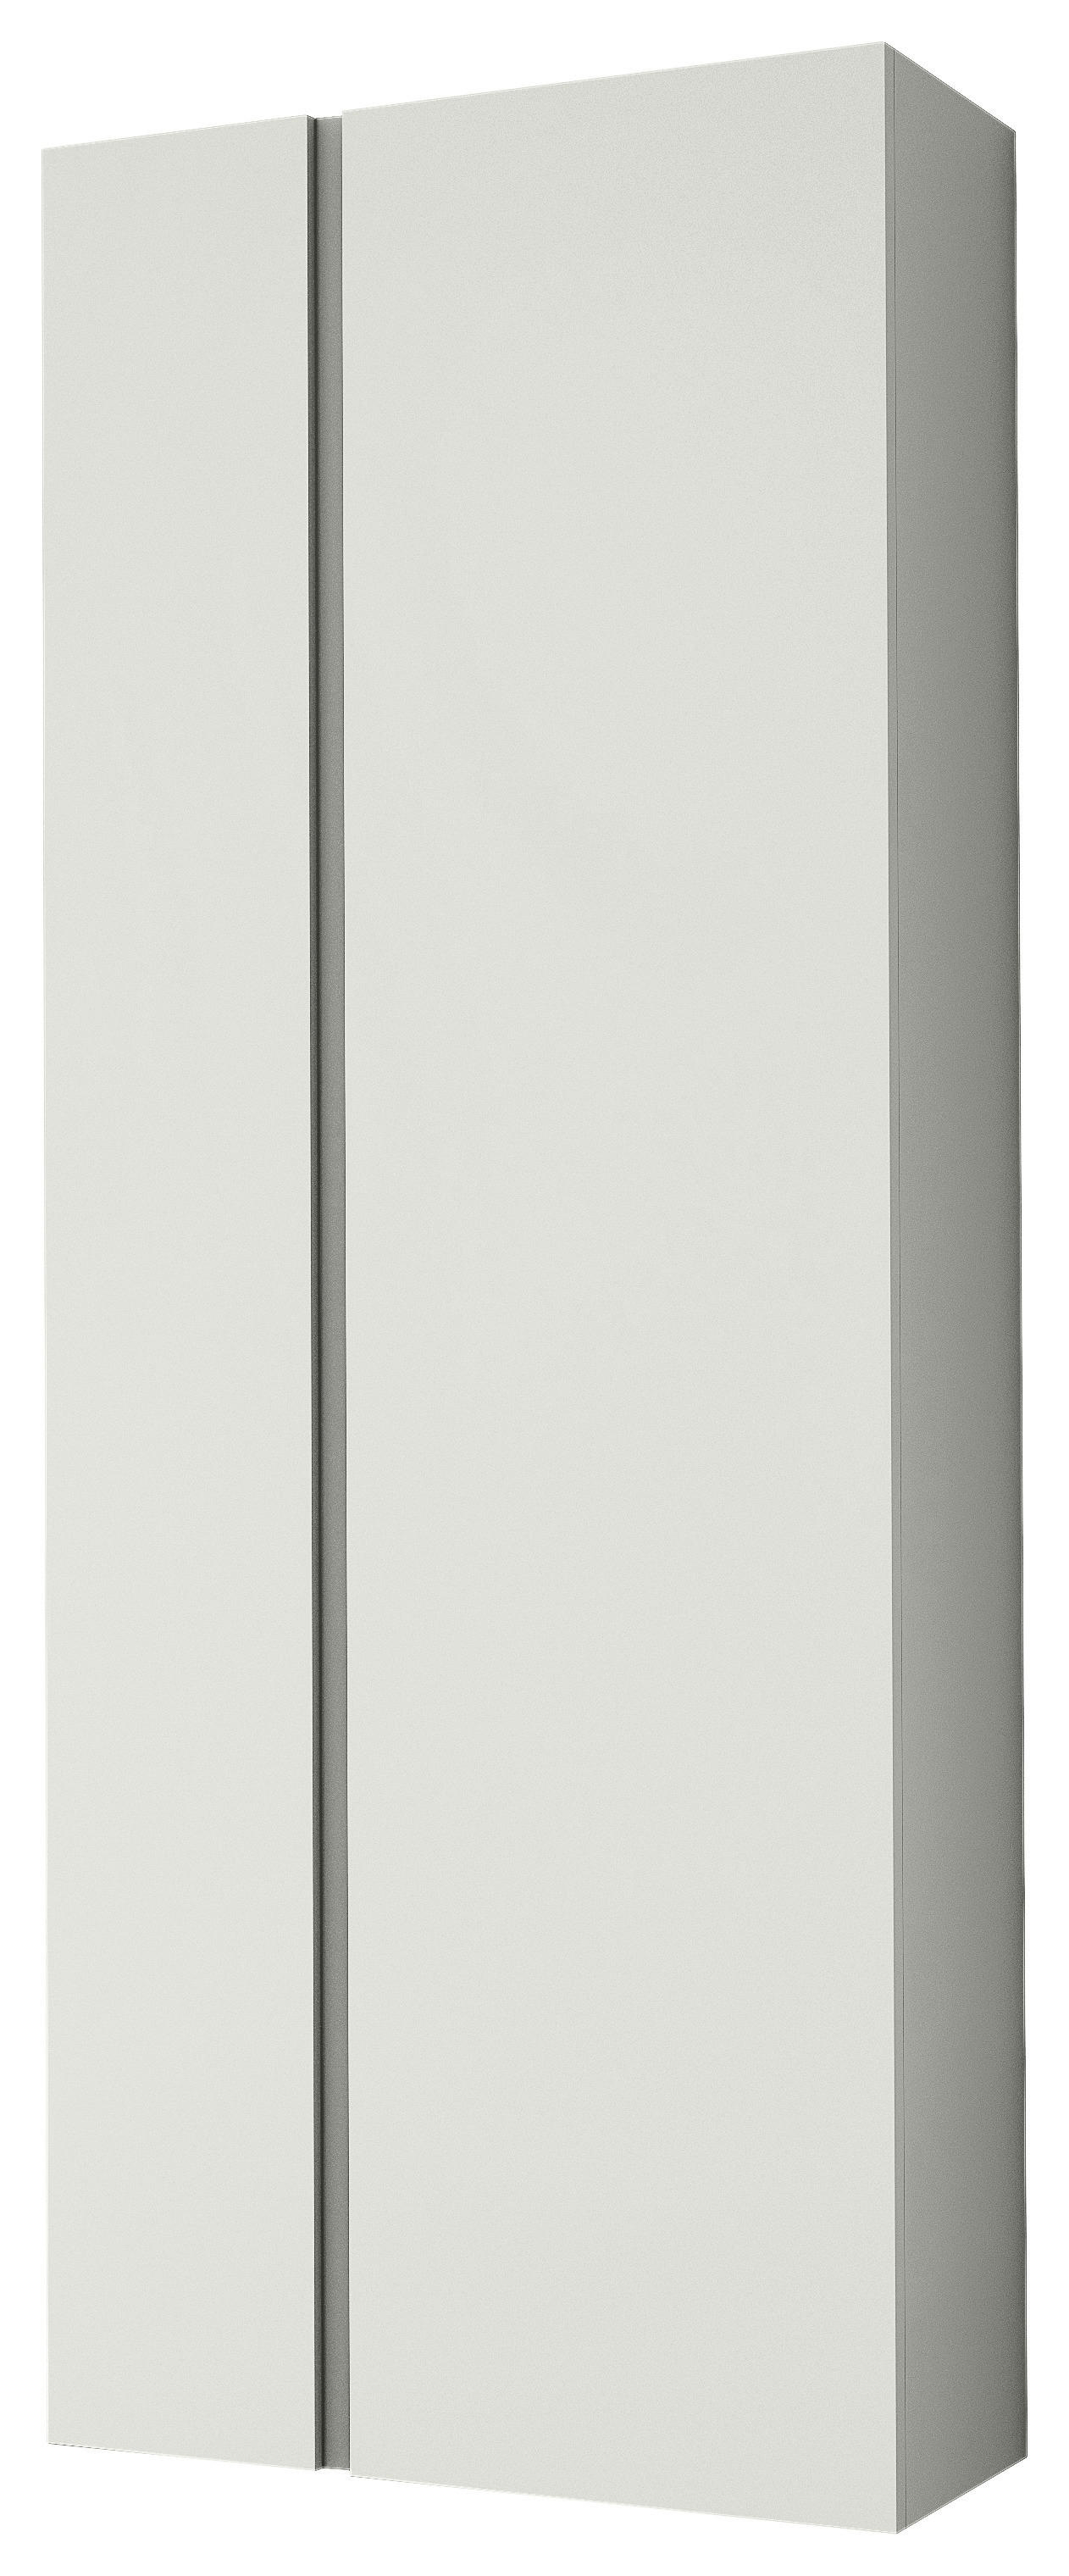 GARDEROBENSCHRANK 60/165/33 cm  - Weiß, Design, Holzwerkstoff (60/165/33cm) - Moderano